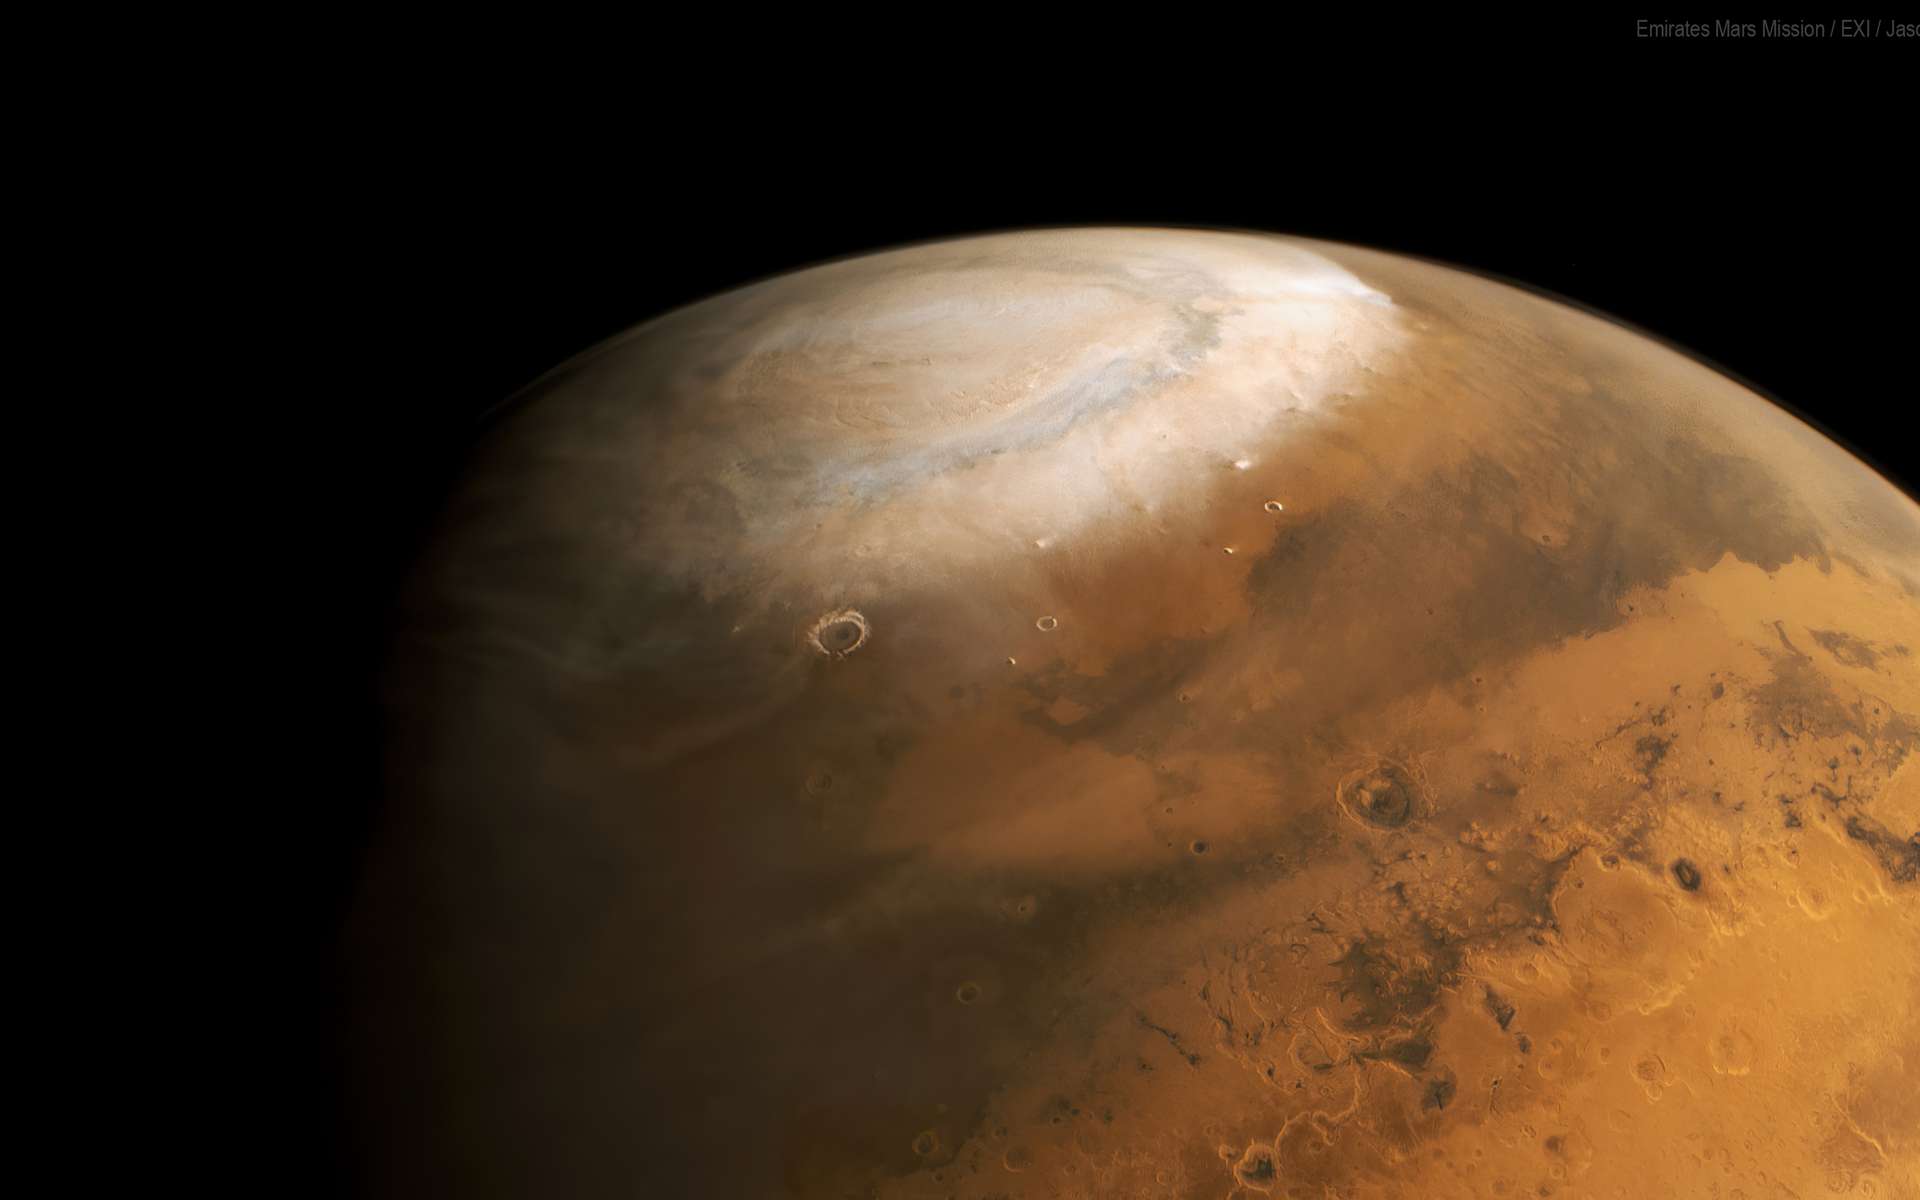 Pôle nord de Mars photographié par la sonde Hope. © UAESA, MBRSC, HopeMarsMission, EXI, Jason Major, Attribution 2.0 Generic (CC BY 2.0)